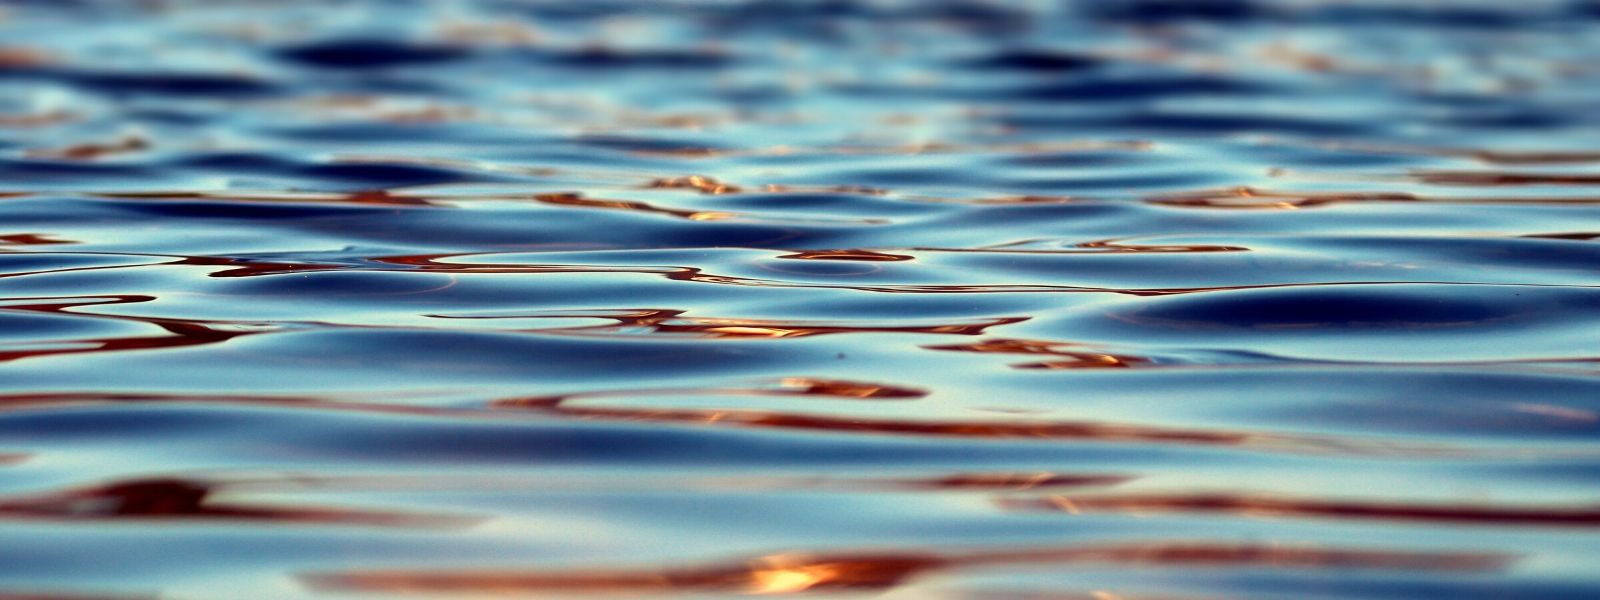 bewusst leben Wasser blaues gold wasserknappheit ungleichgewicht wasser sparen nachhaltigkeit klimawandel klimakrise wasserkrise wasserproblem